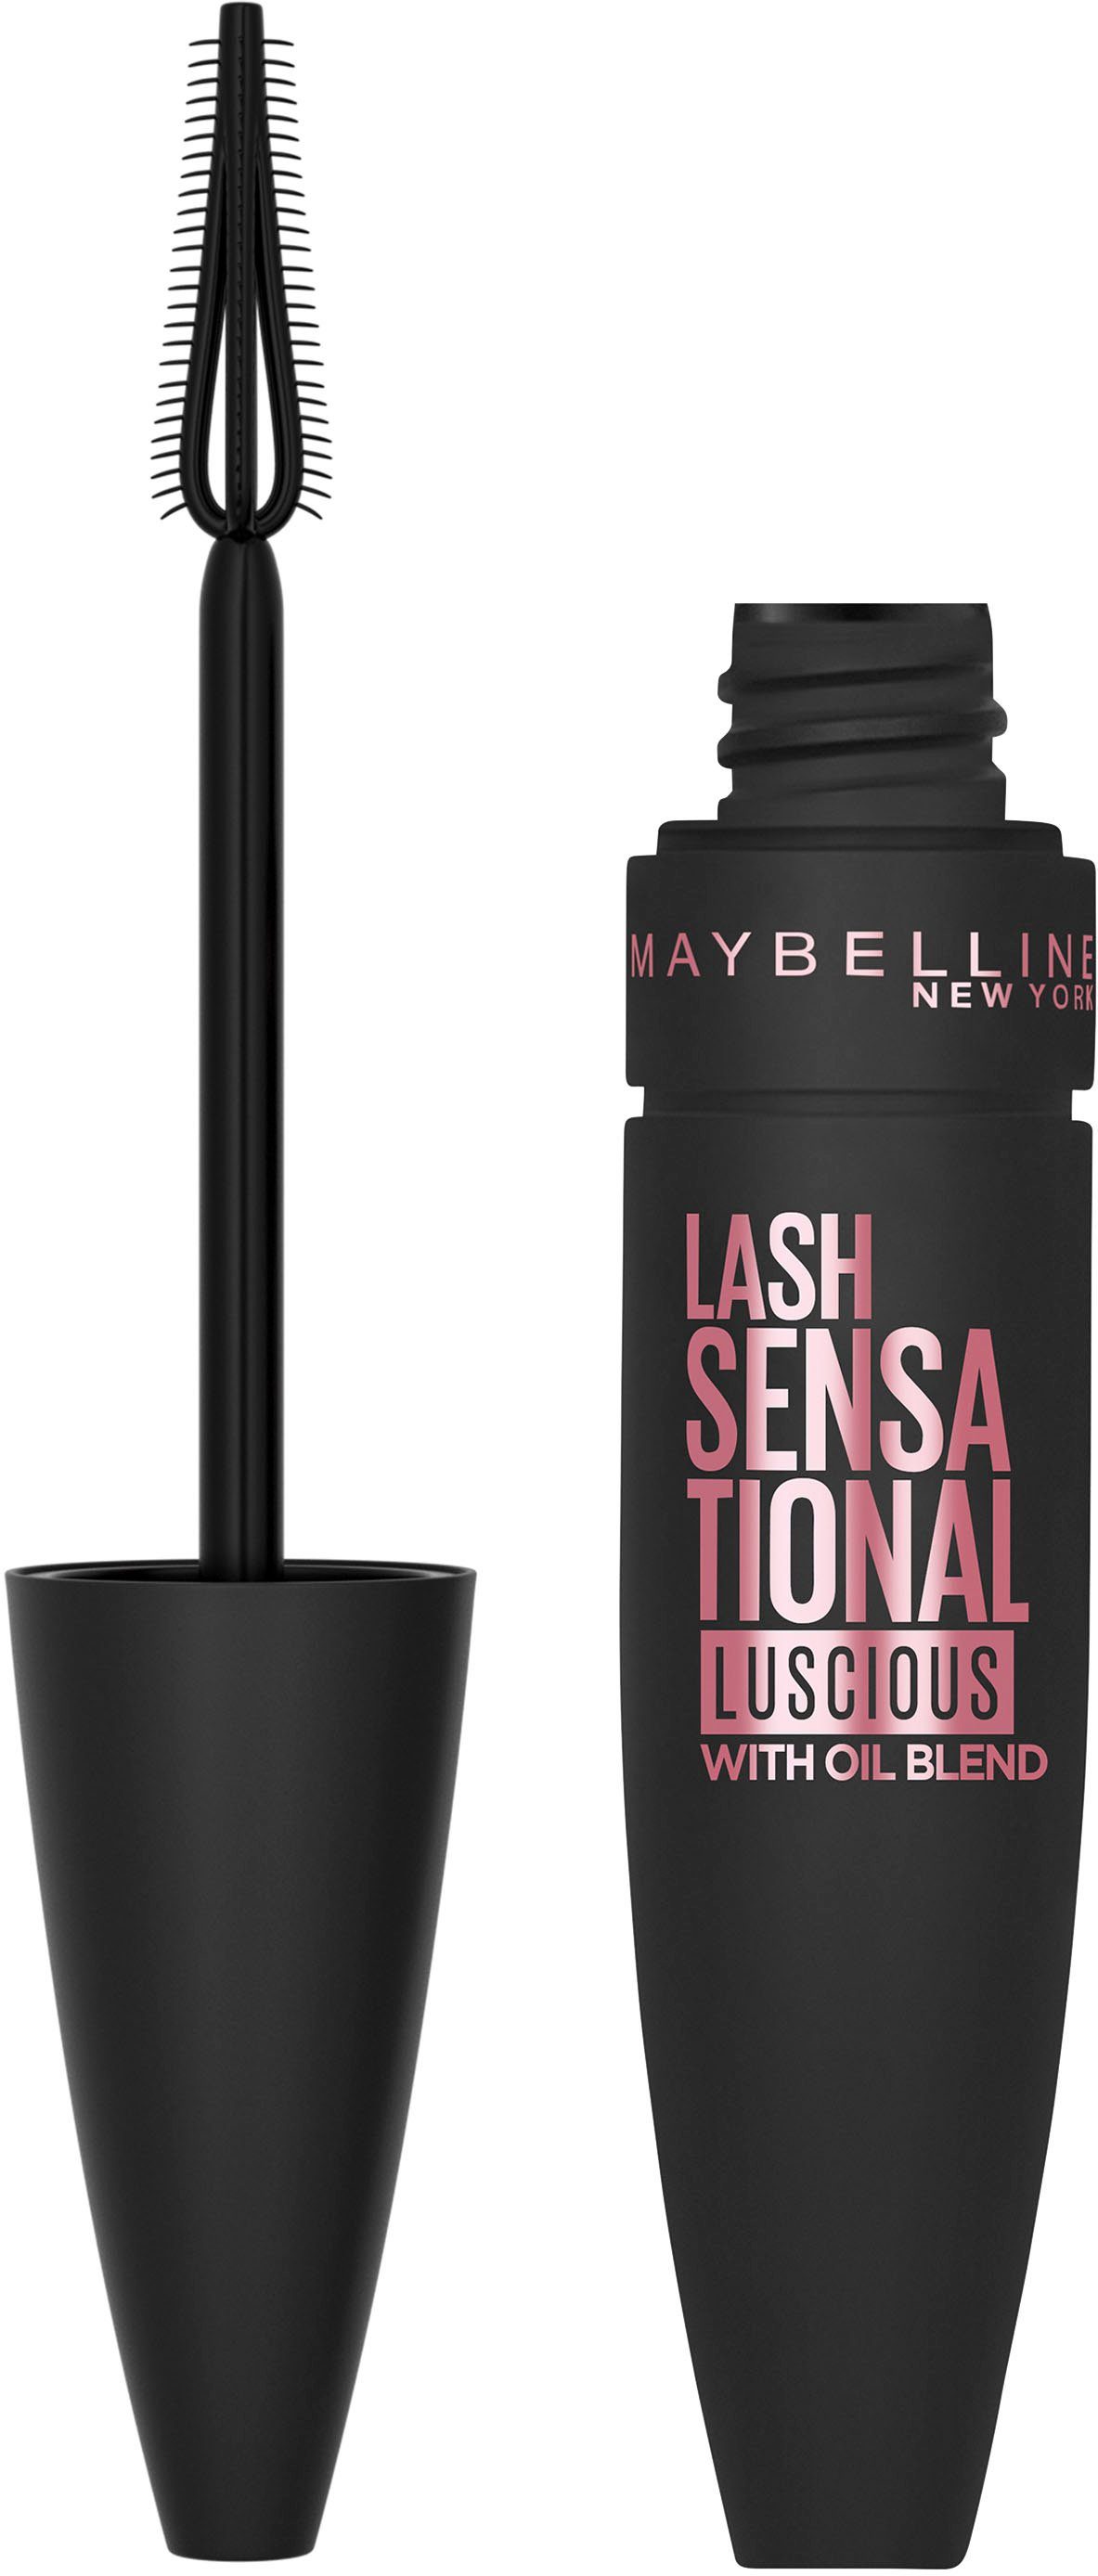 Luscious, YORK MAYBELLINE NEW Lash Mascara Sensational und Volumen Fächereffekt